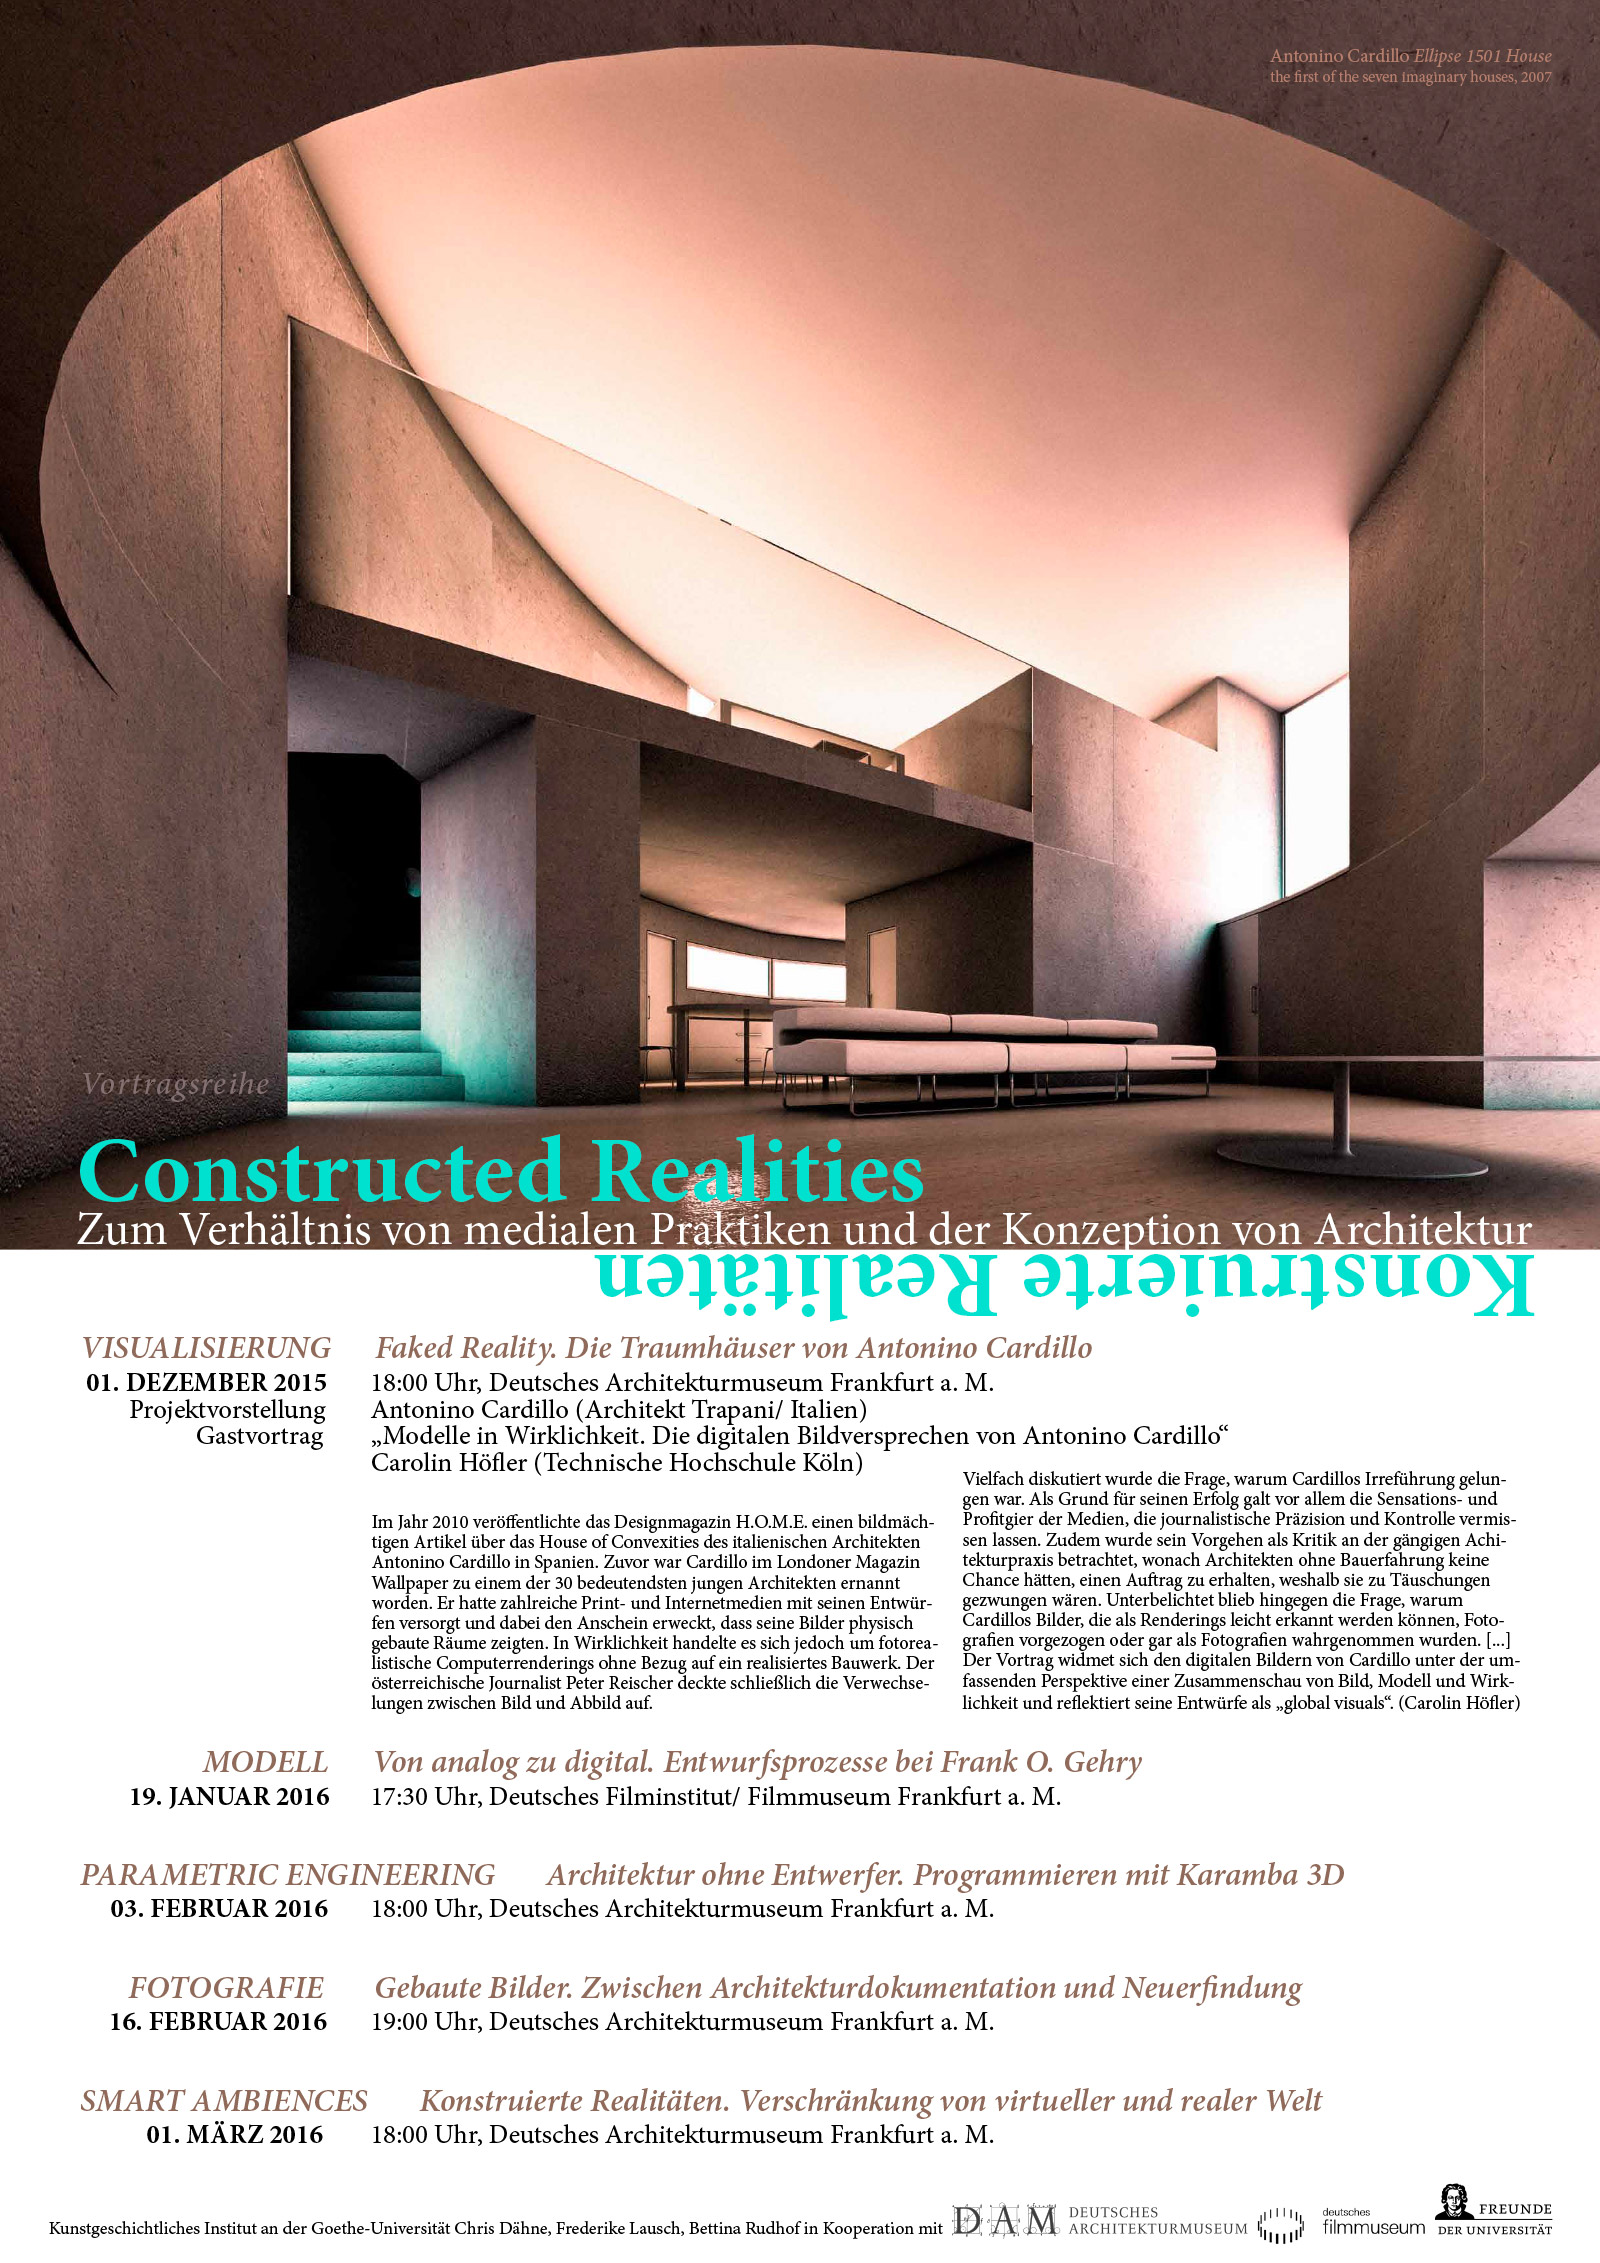 Goethe‑Universität Constructed Realities poster on Antonino Cardillo